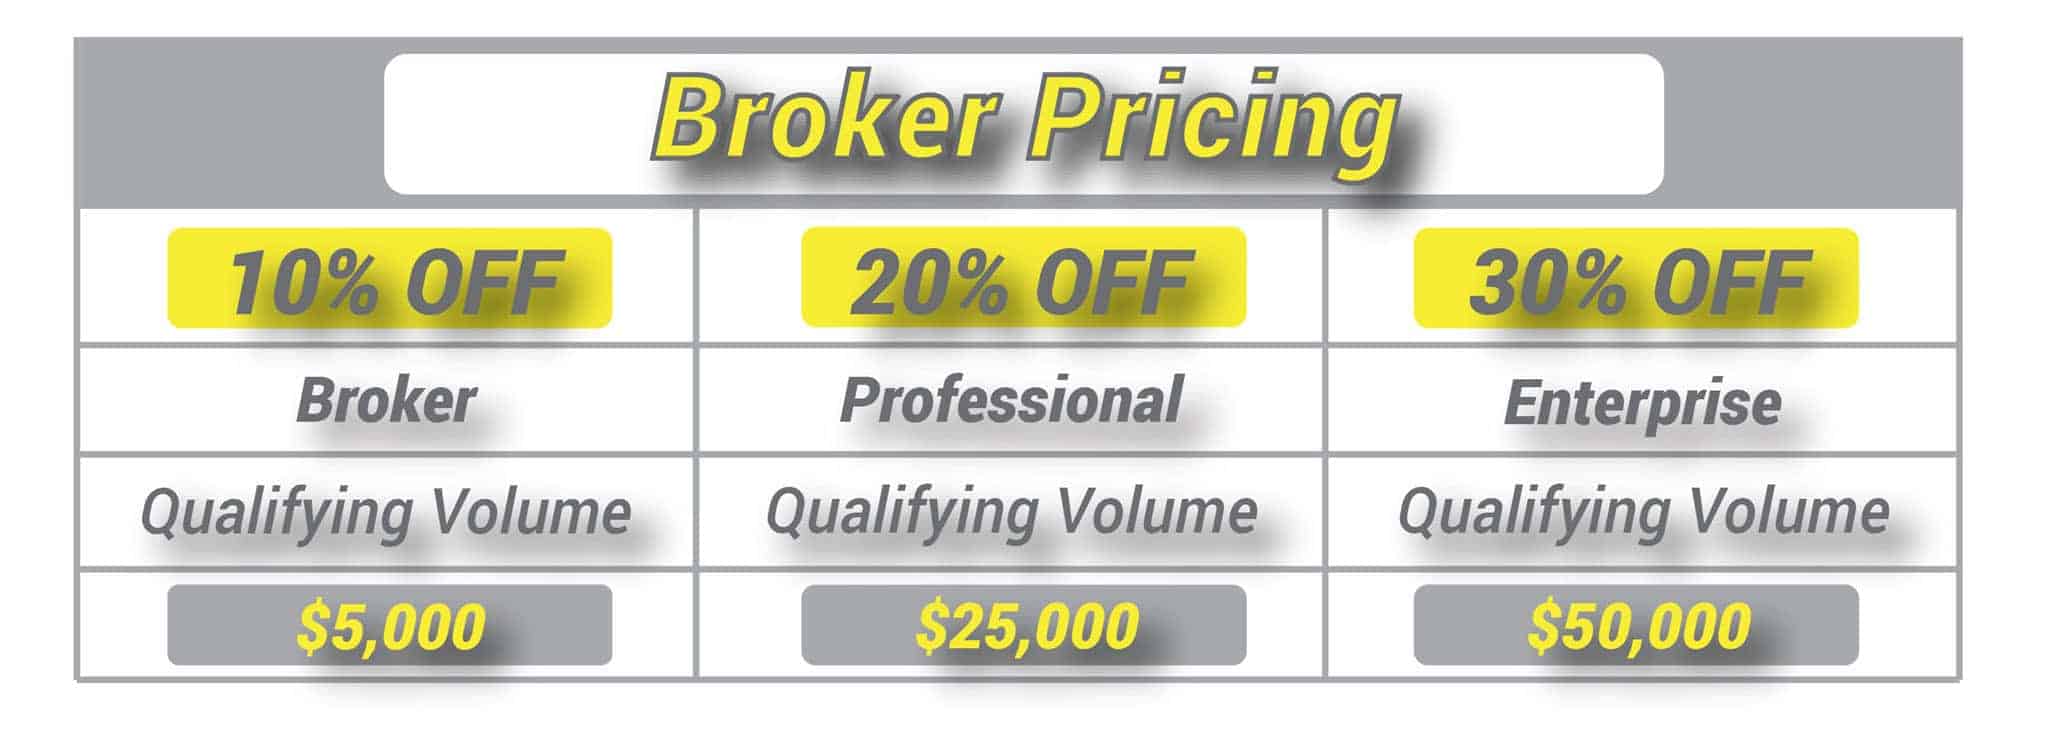 Broker Pricing Tradeline Discount